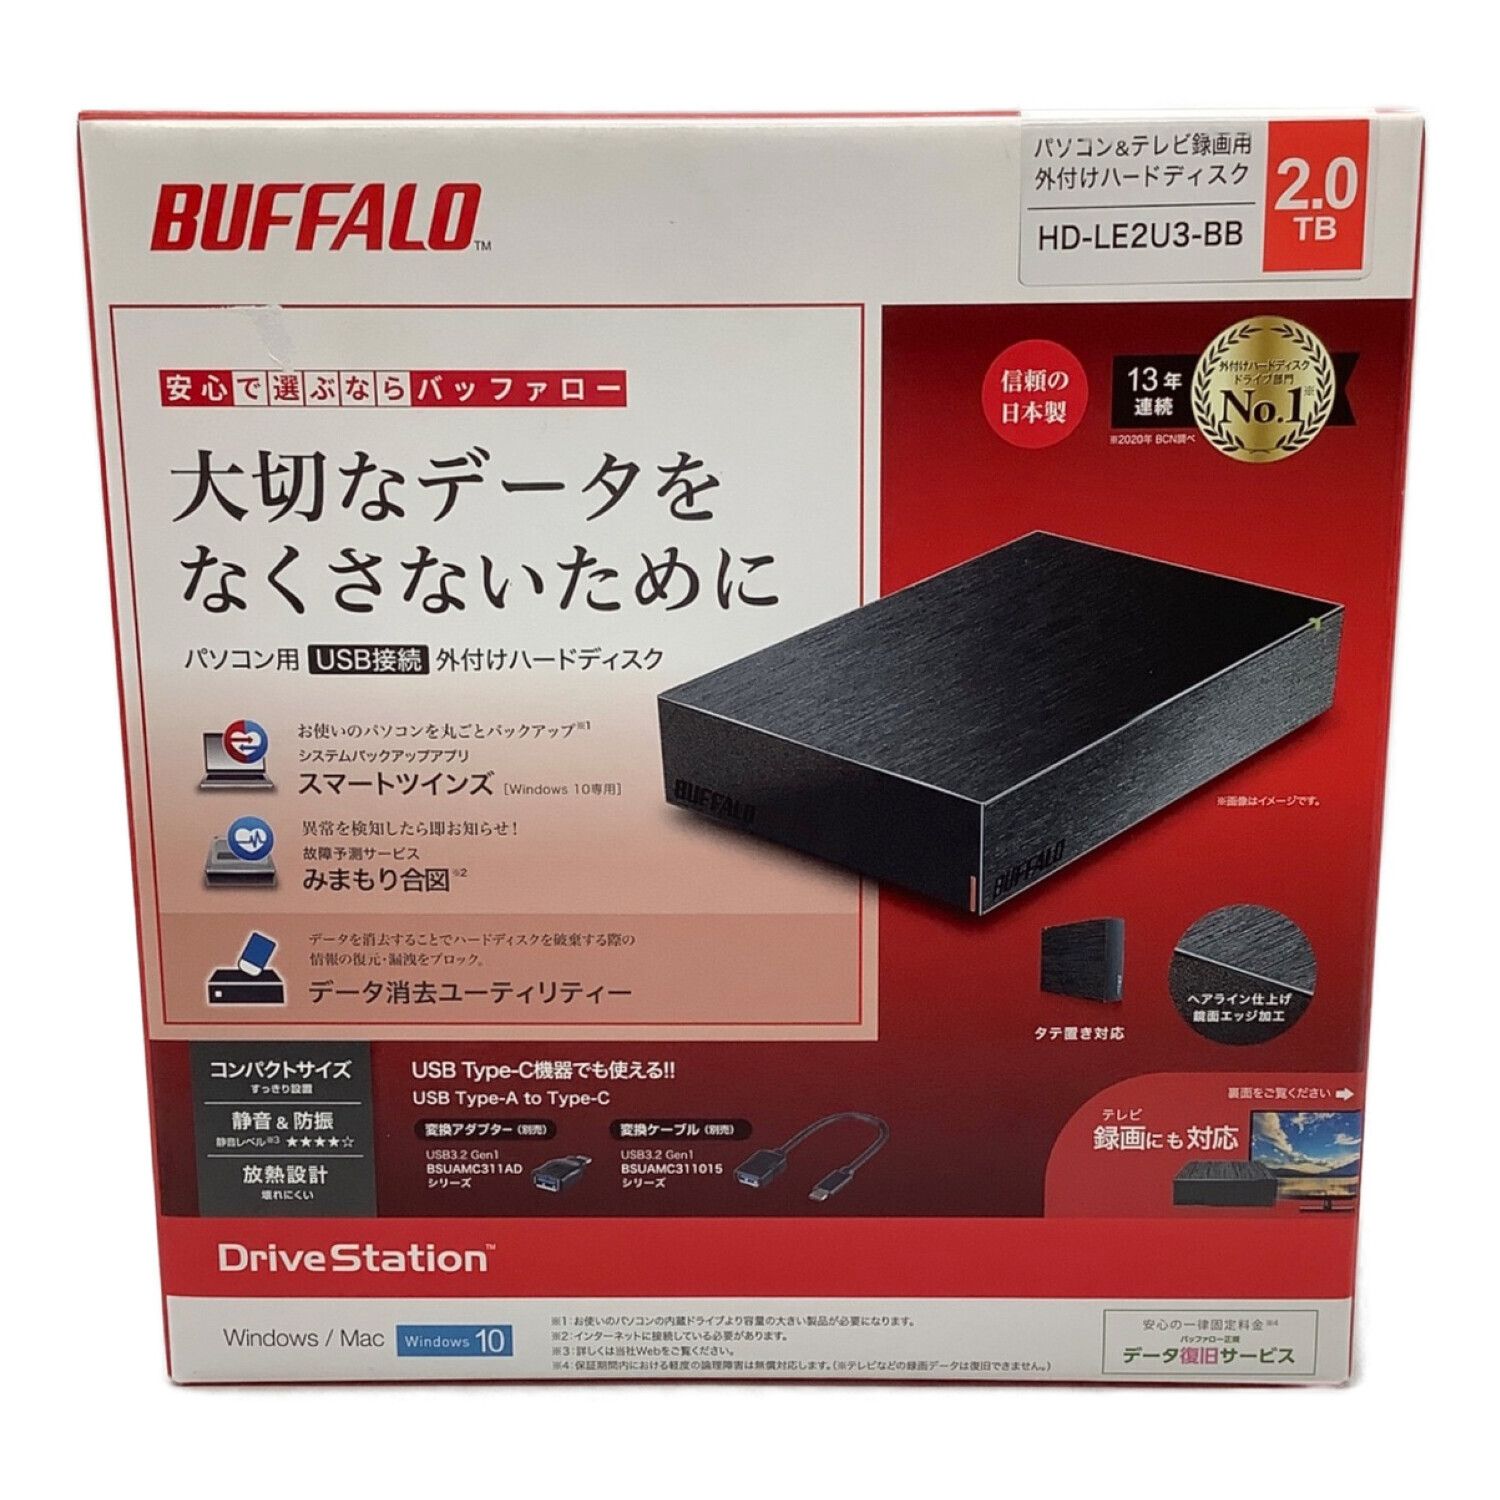 BUFFALO 外付け録画機 2TB全て対応ではないんですか